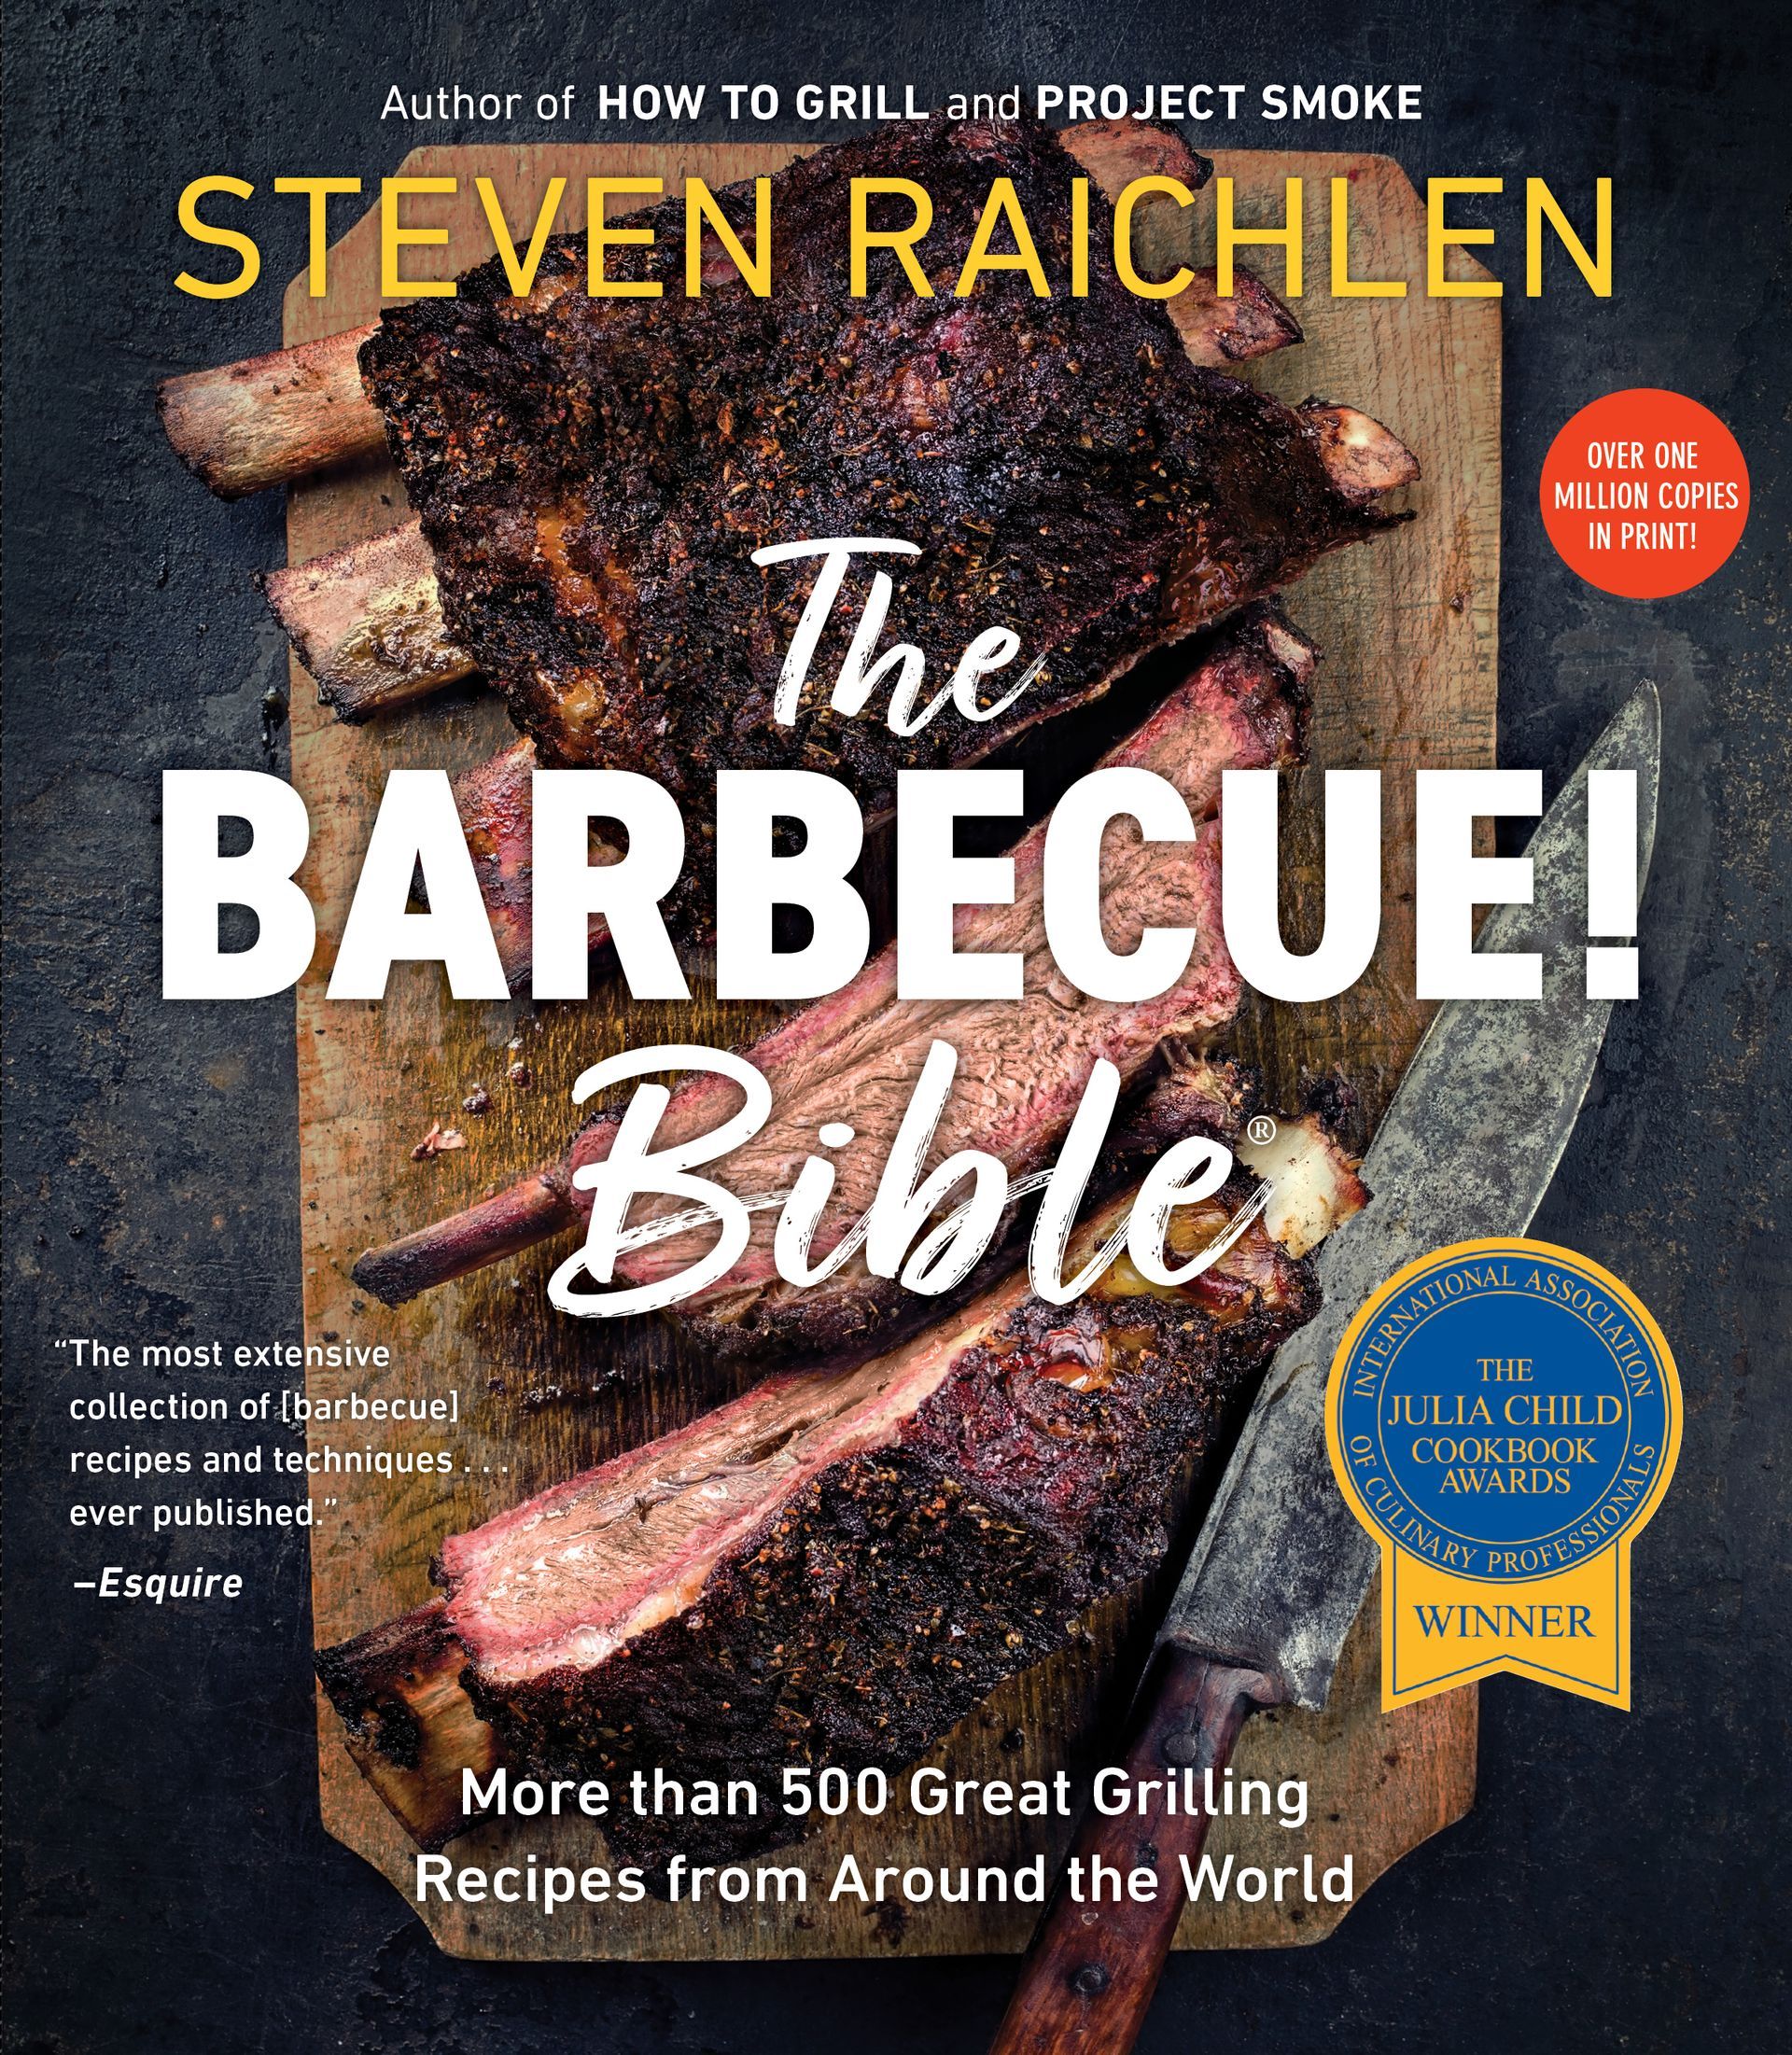 THE BARBECUE BIBLE - Steven Raichlen